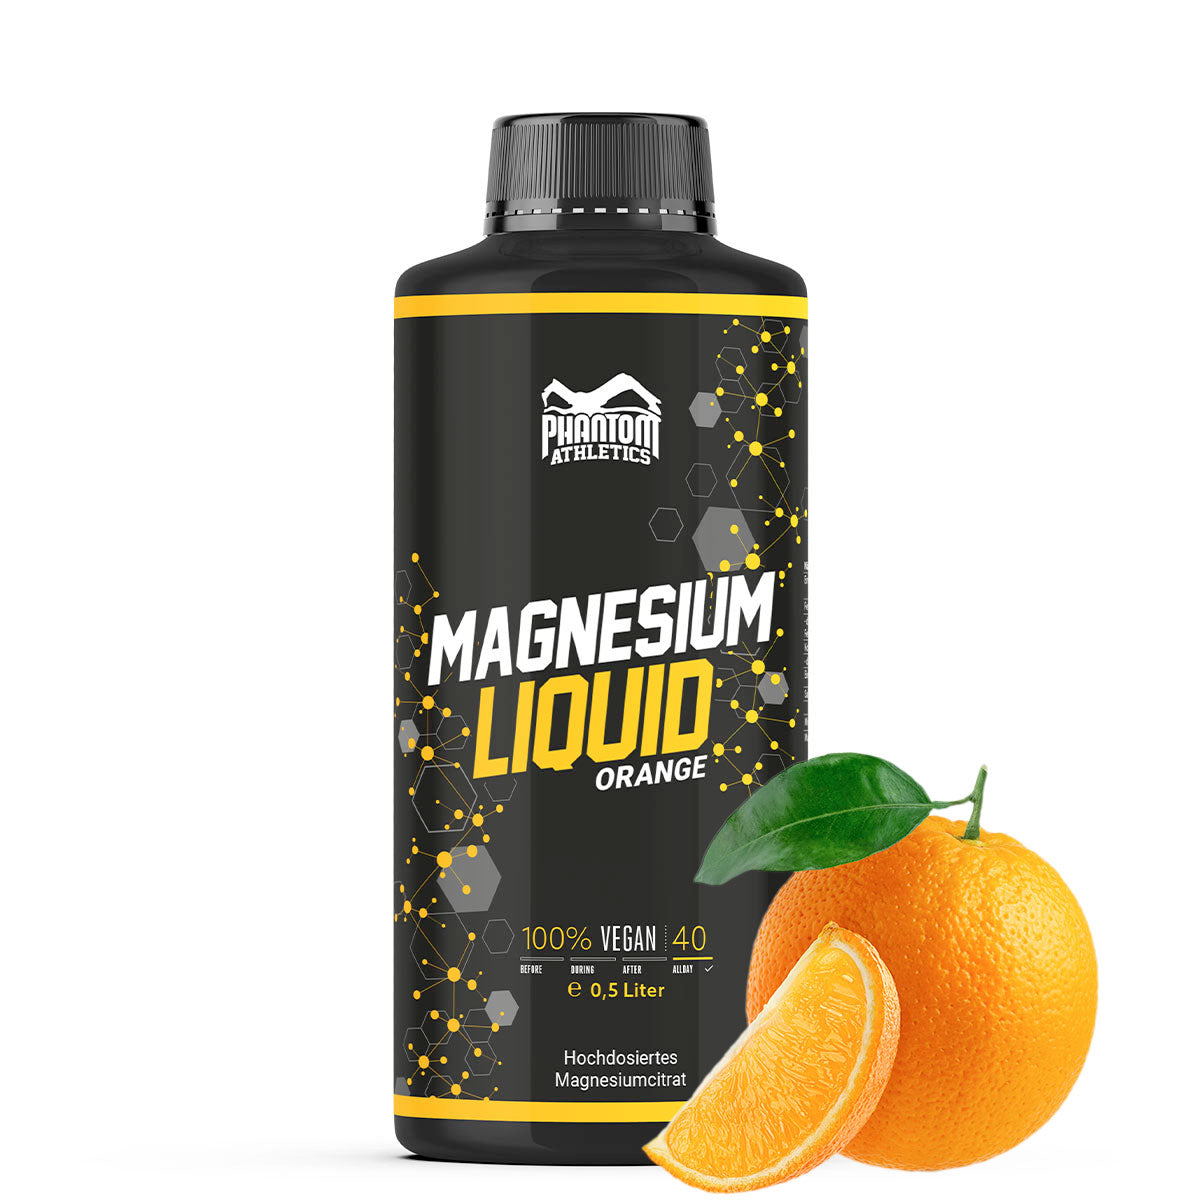 Phantom Magnesium Liquid - Magnésium liquide pour une meilleure régénération dans les arts martiaux.